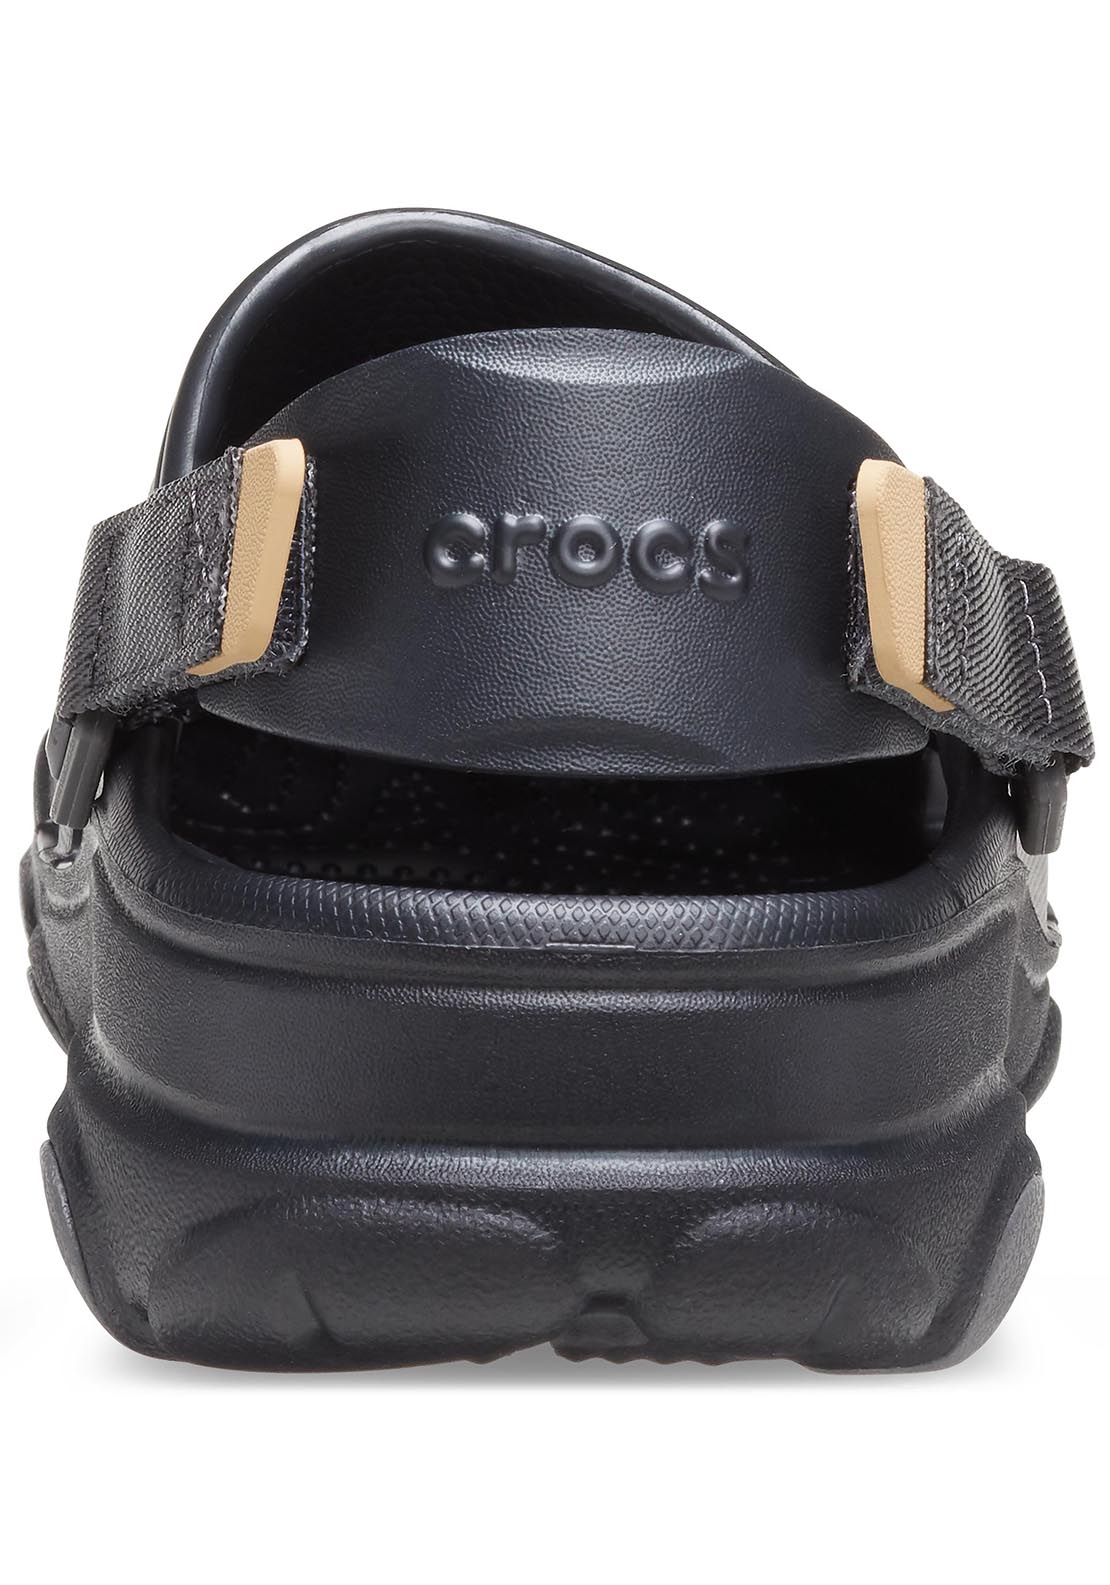 Crocs All Terrain Clog - Black 4 Shaws Department Stores